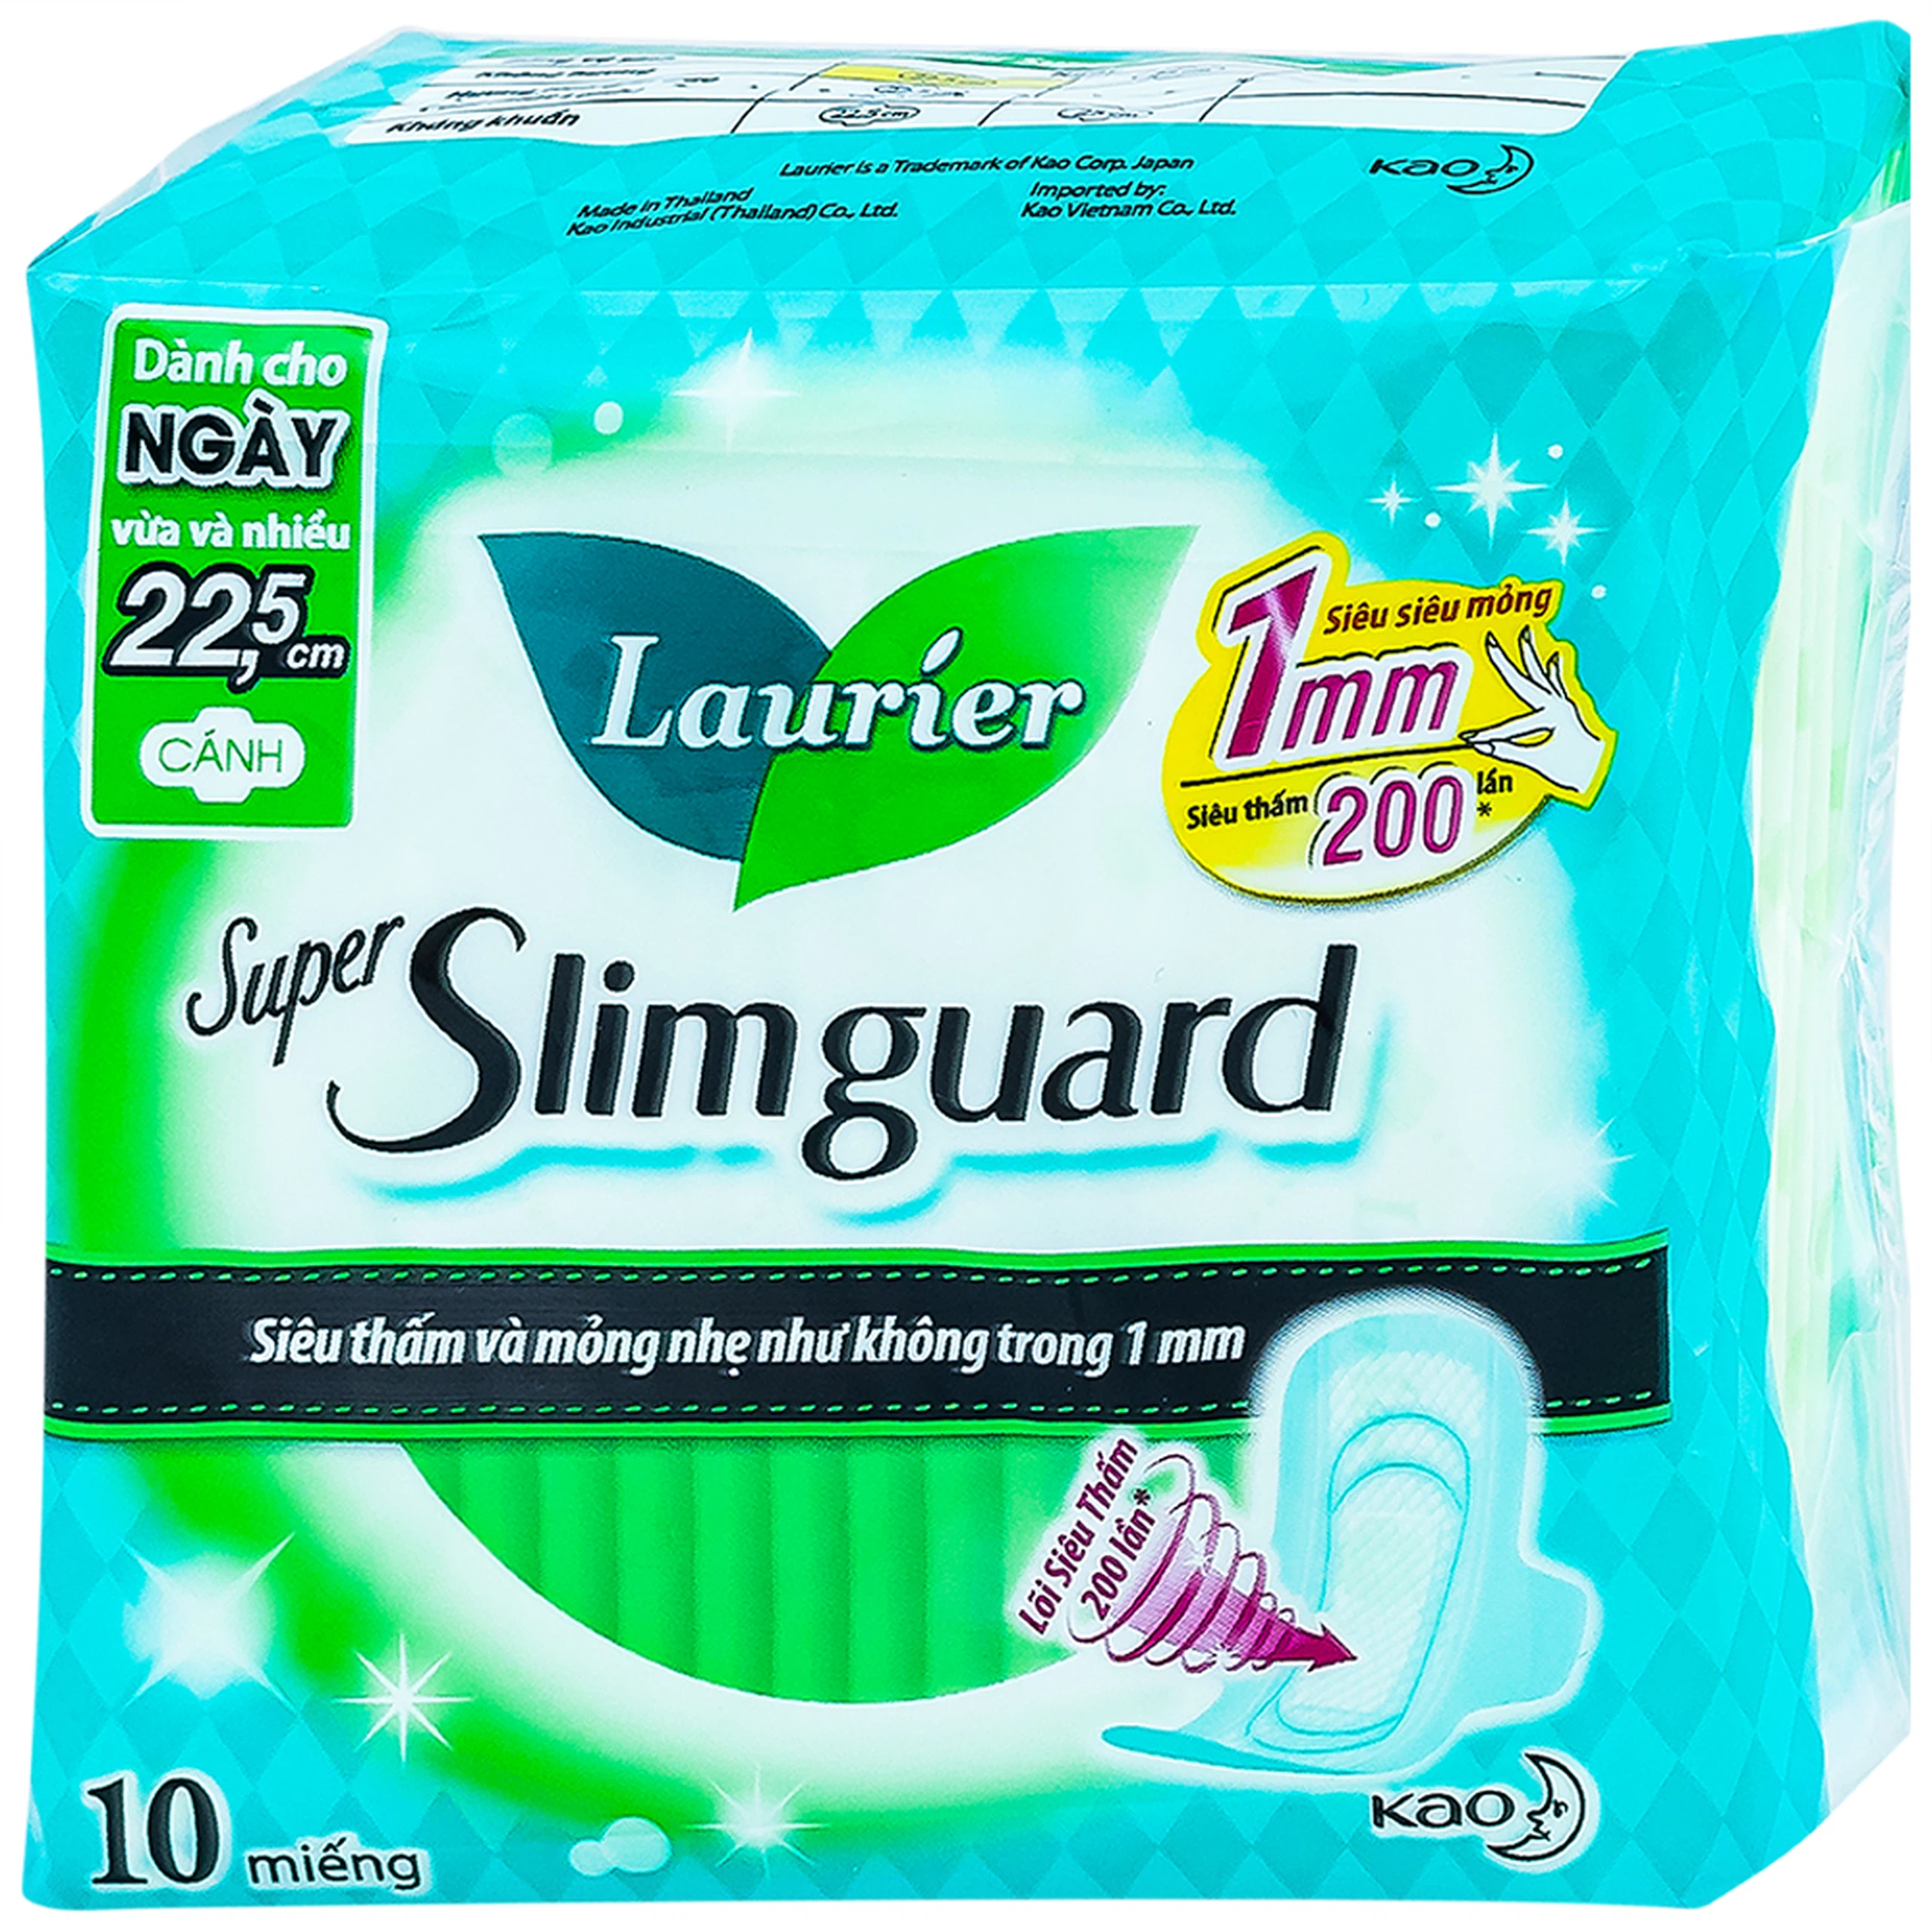 Băng vệ sinh Laurier Super Slimguard Kao siêu thấm và mỏng nhẹ (1mm - 10 miếng)